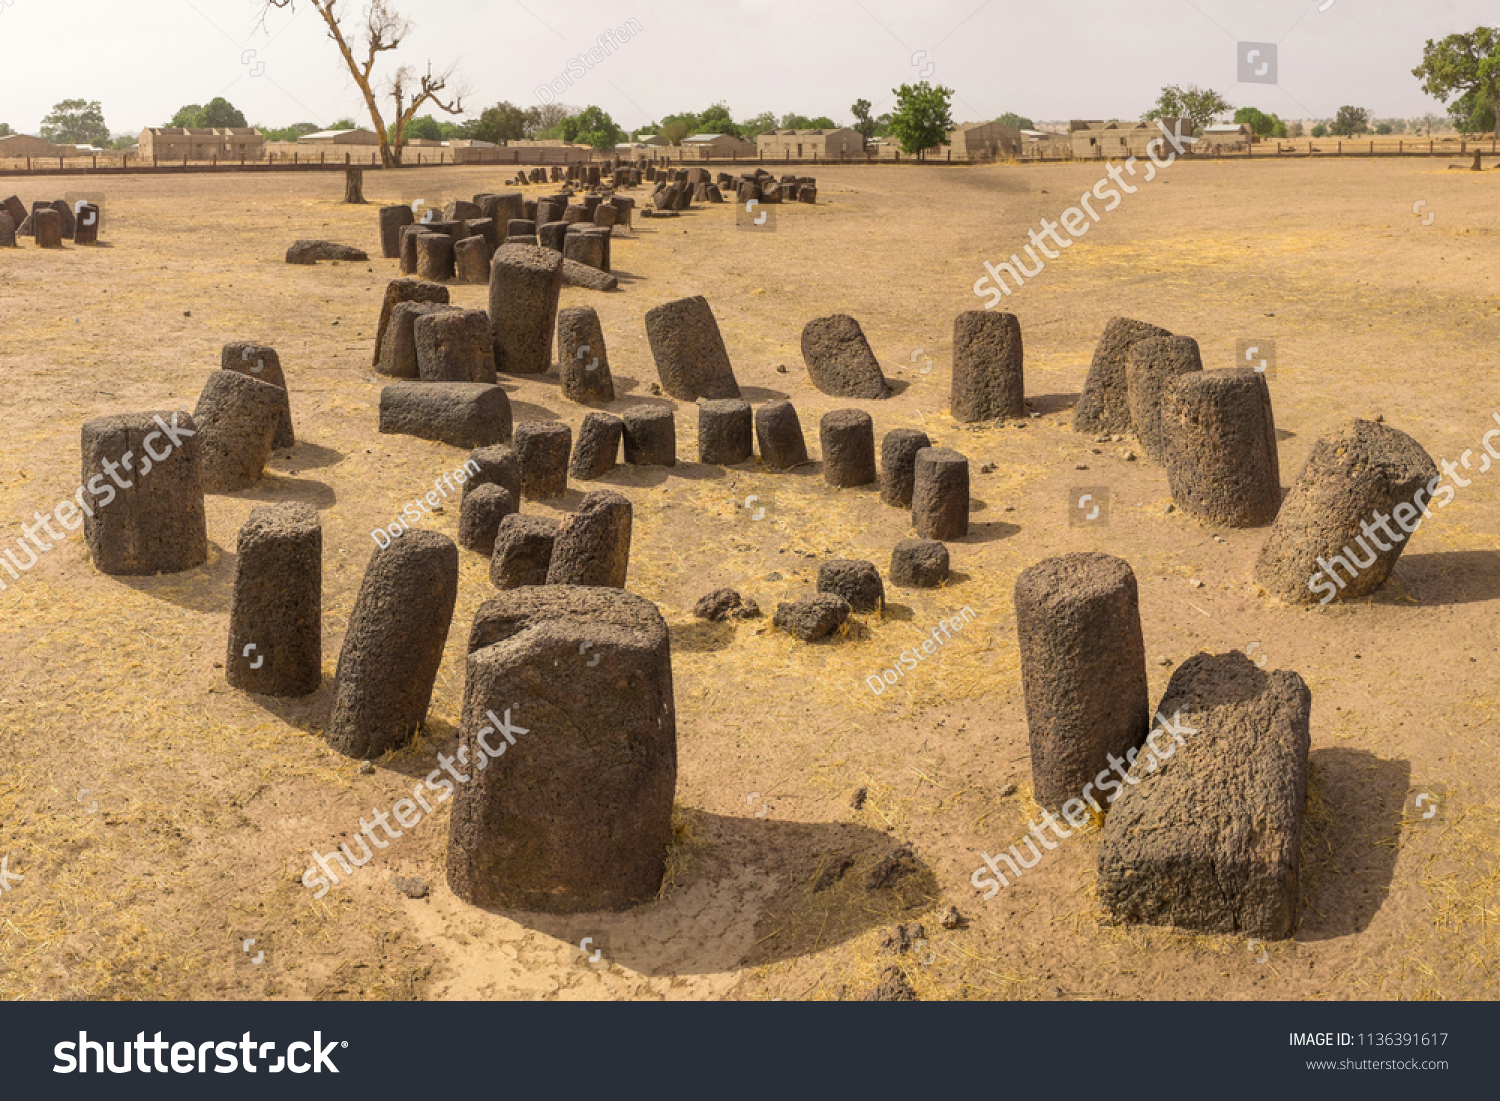 Concentric Senegambian Stone Circle at Sine Ngayene #1136391617